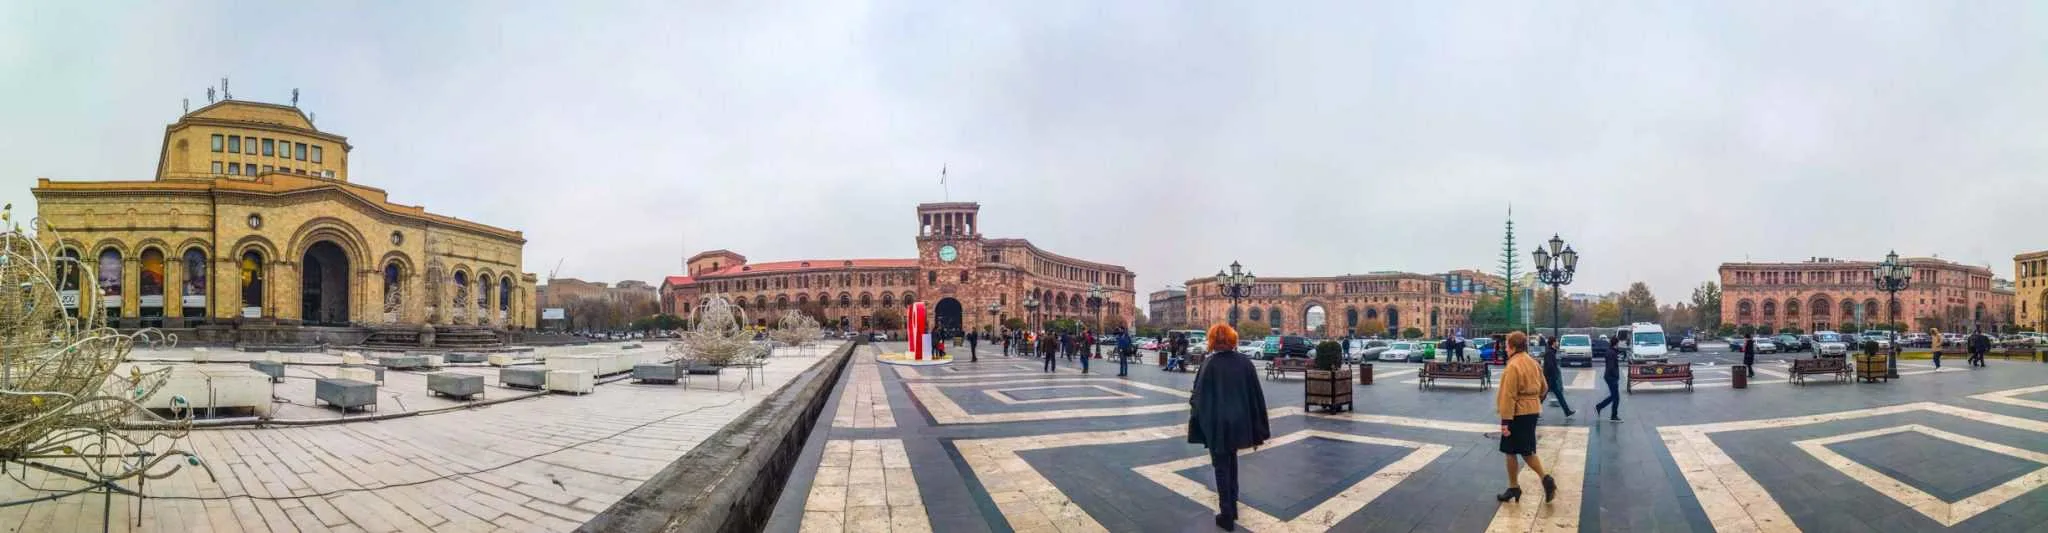 Republic Square yerevan armenia